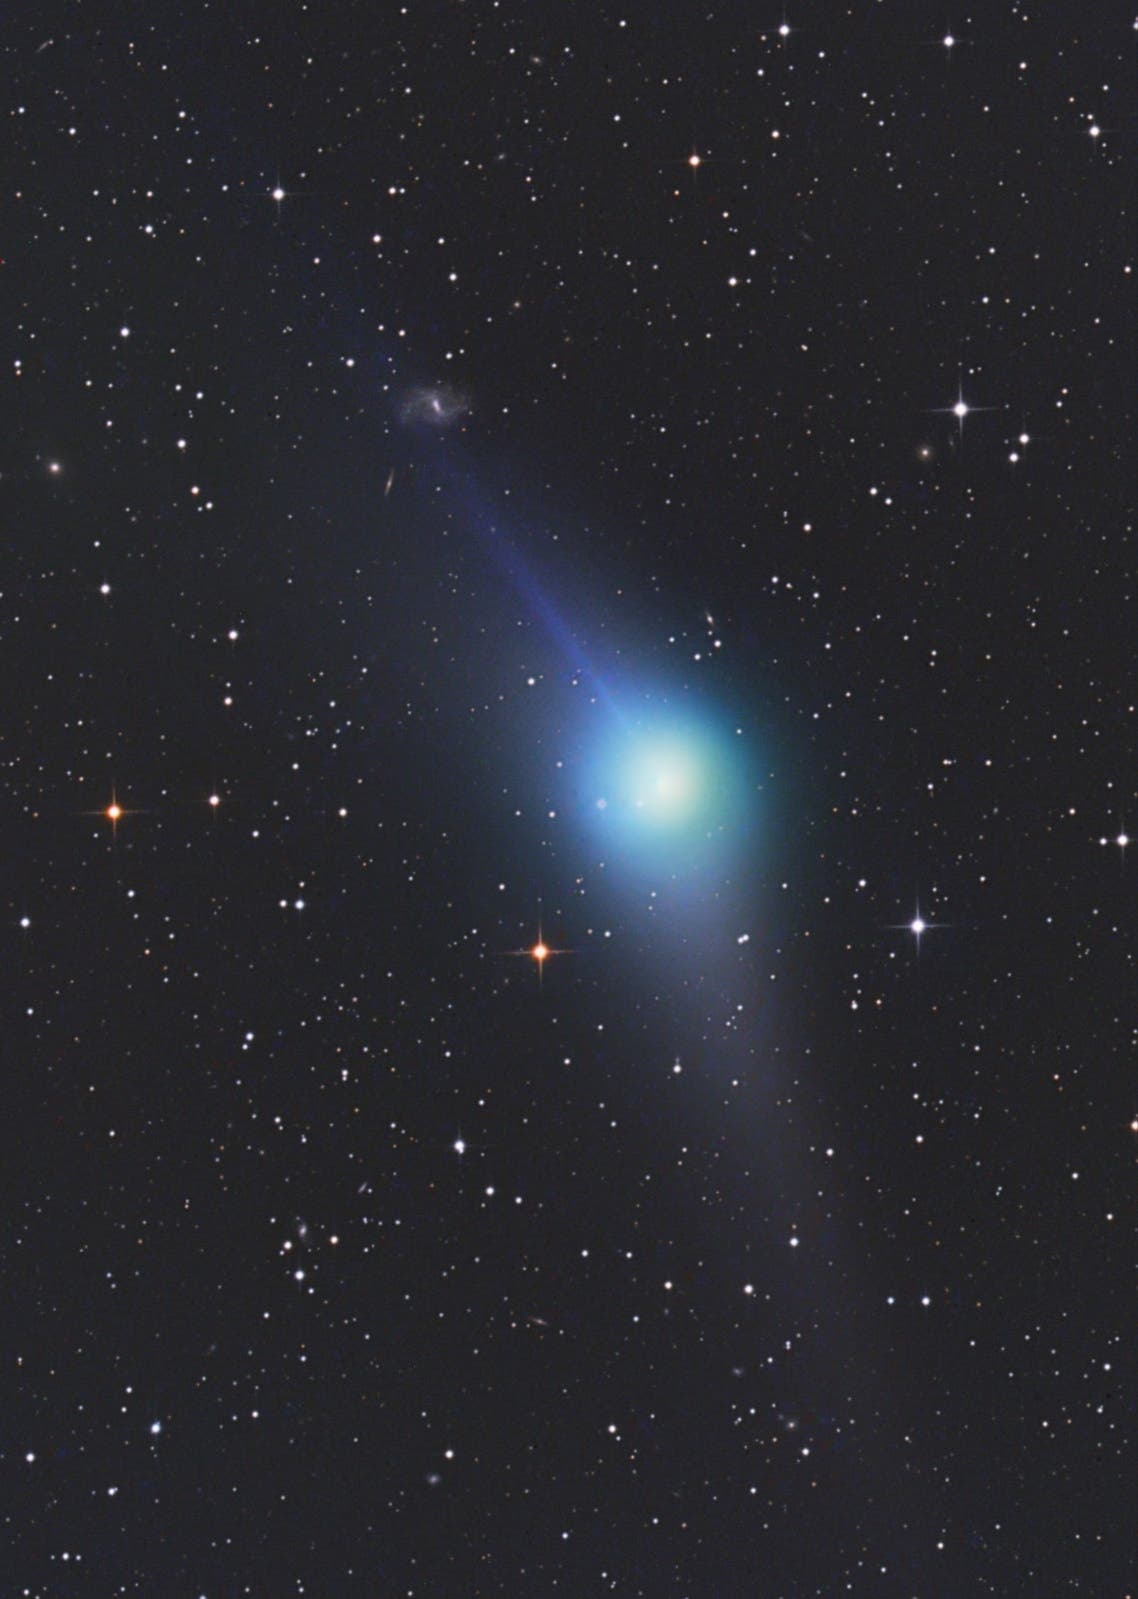 Komet Garradd am 31.1.2012 bei NGC 6339